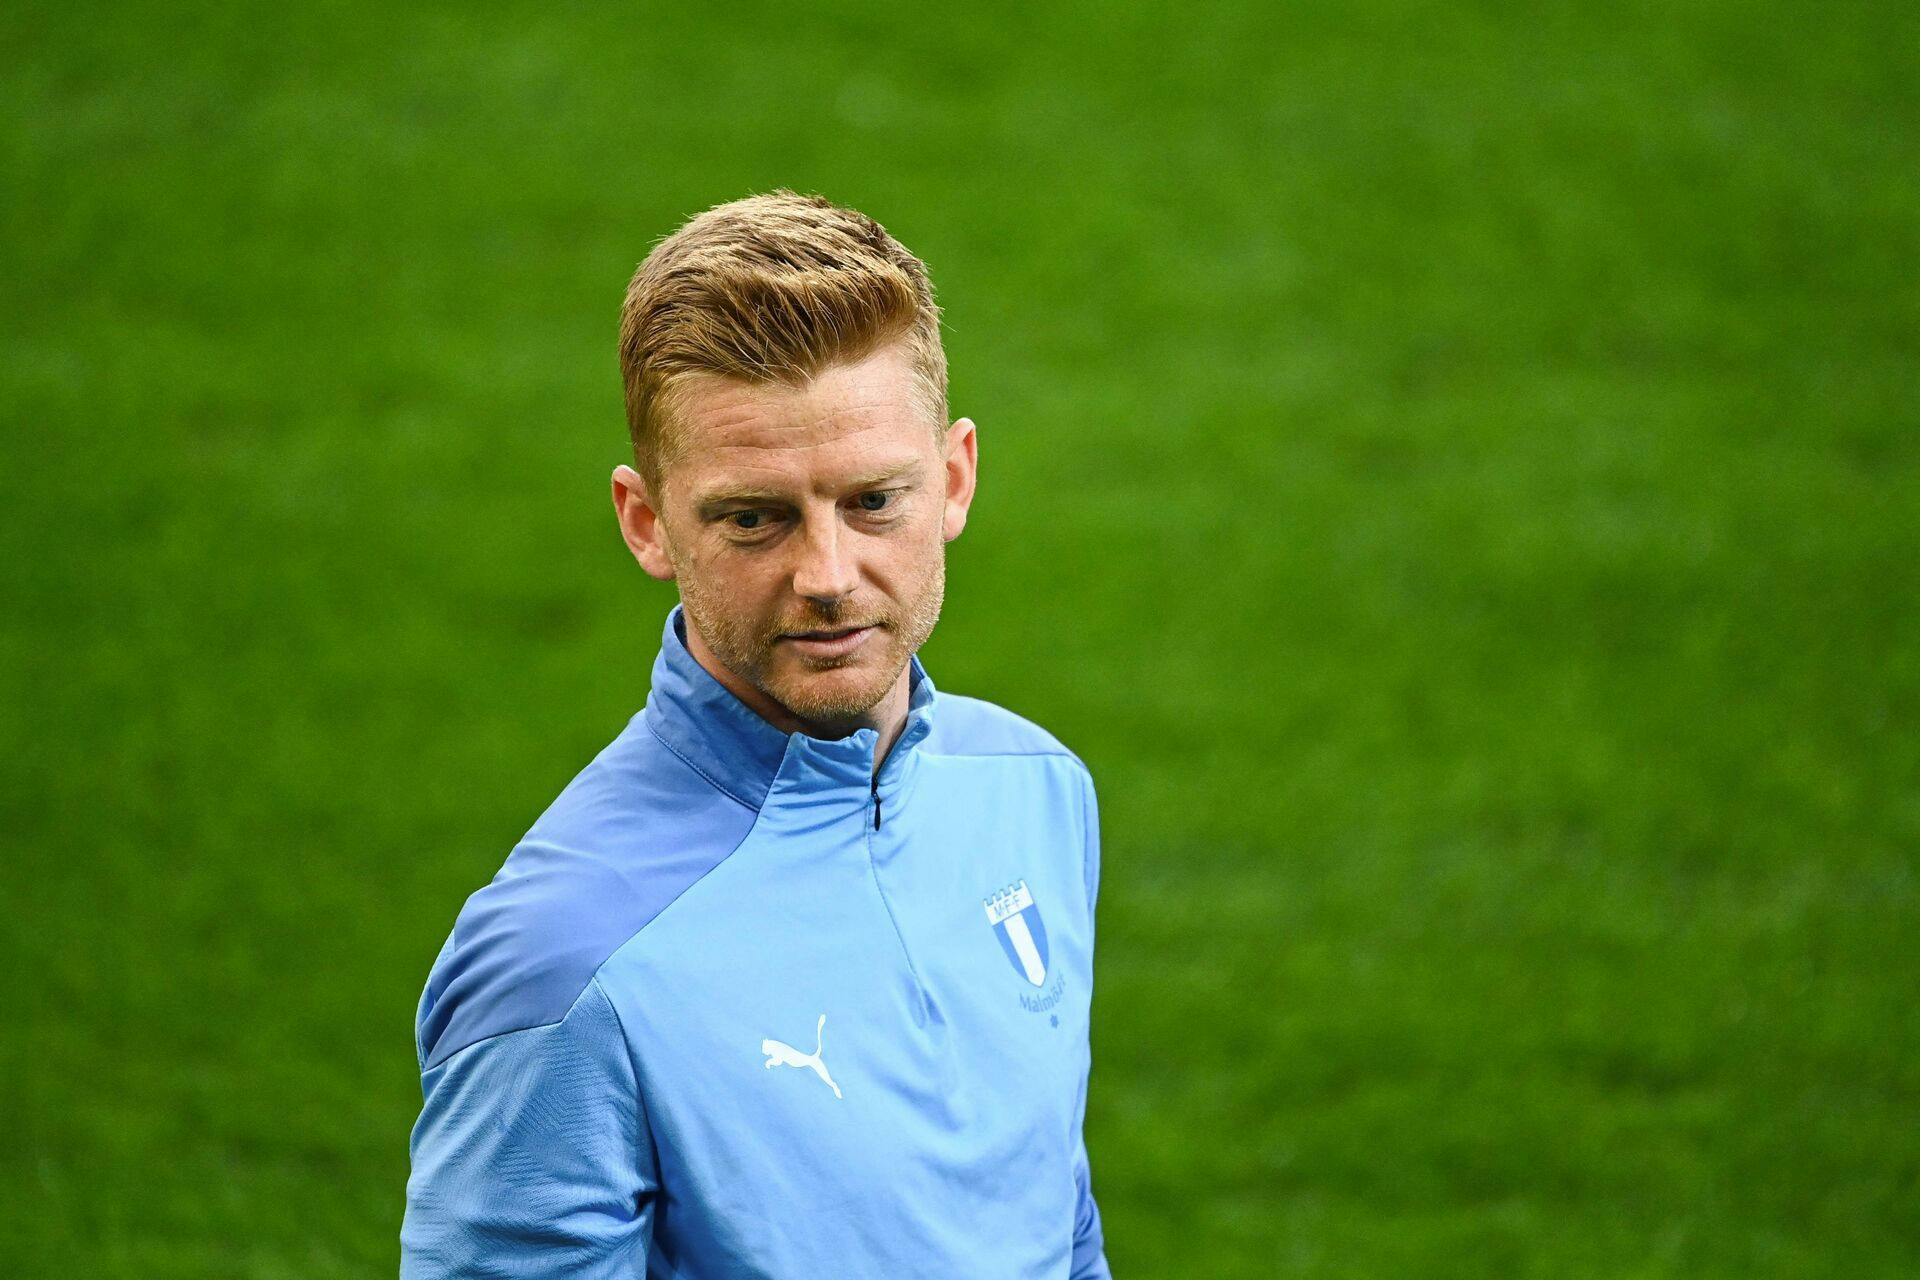 Anders Christiansen fik torsdag comeback for Malmö FF i en testkamp mod Silkeborg IF. Den danske midtbanemand har siddet ude siden sidste år, da han i maj fik indopereret en pacemaker efter et ildebefindende.